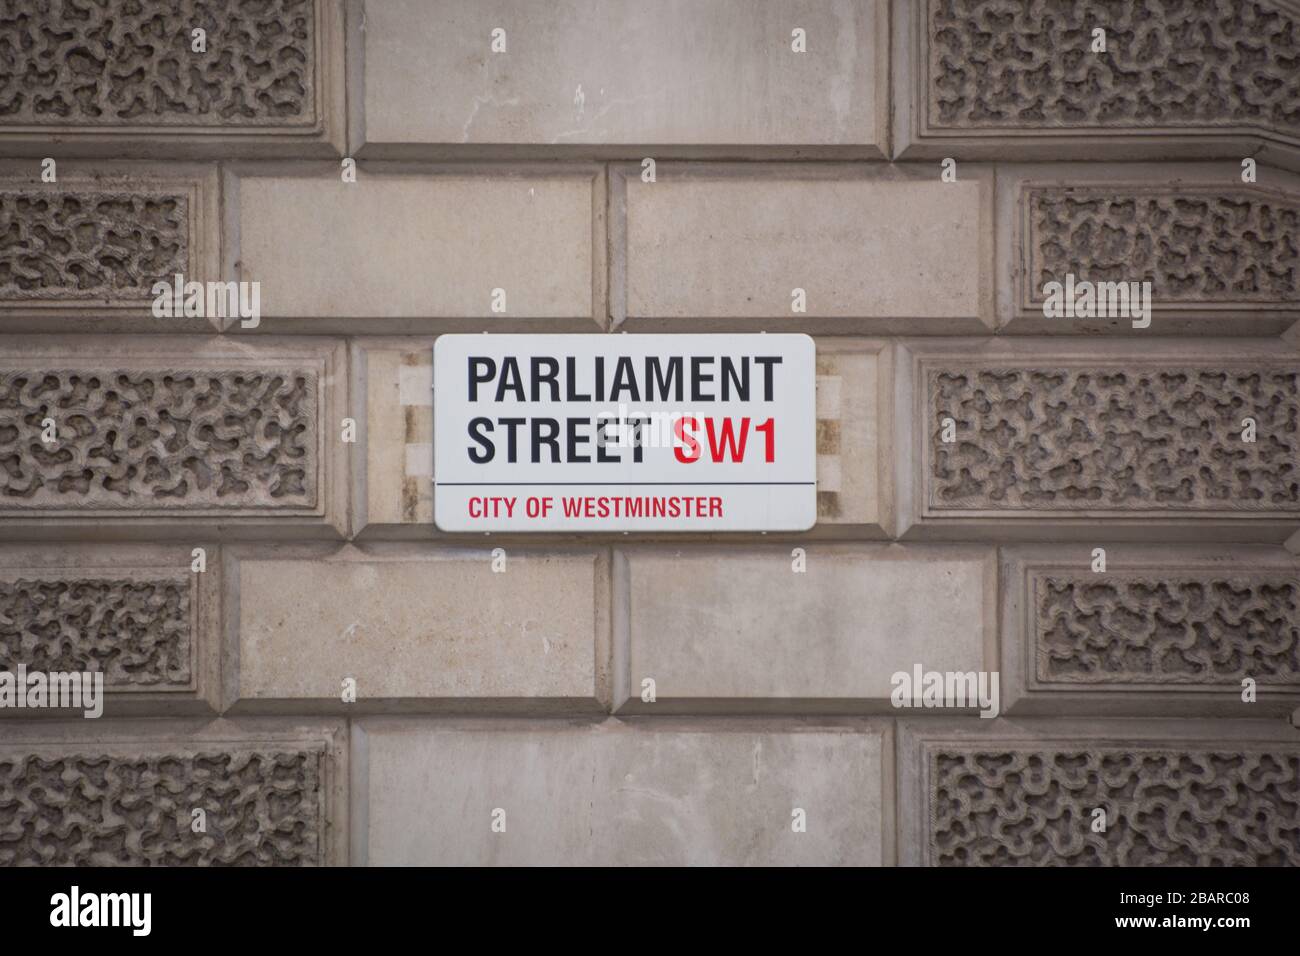 LONDON- Parliament Street SW1, cartello stradale, City of Westminster. Una strada famosa e la posizione di molti edifici governativi britannici Foto Stock